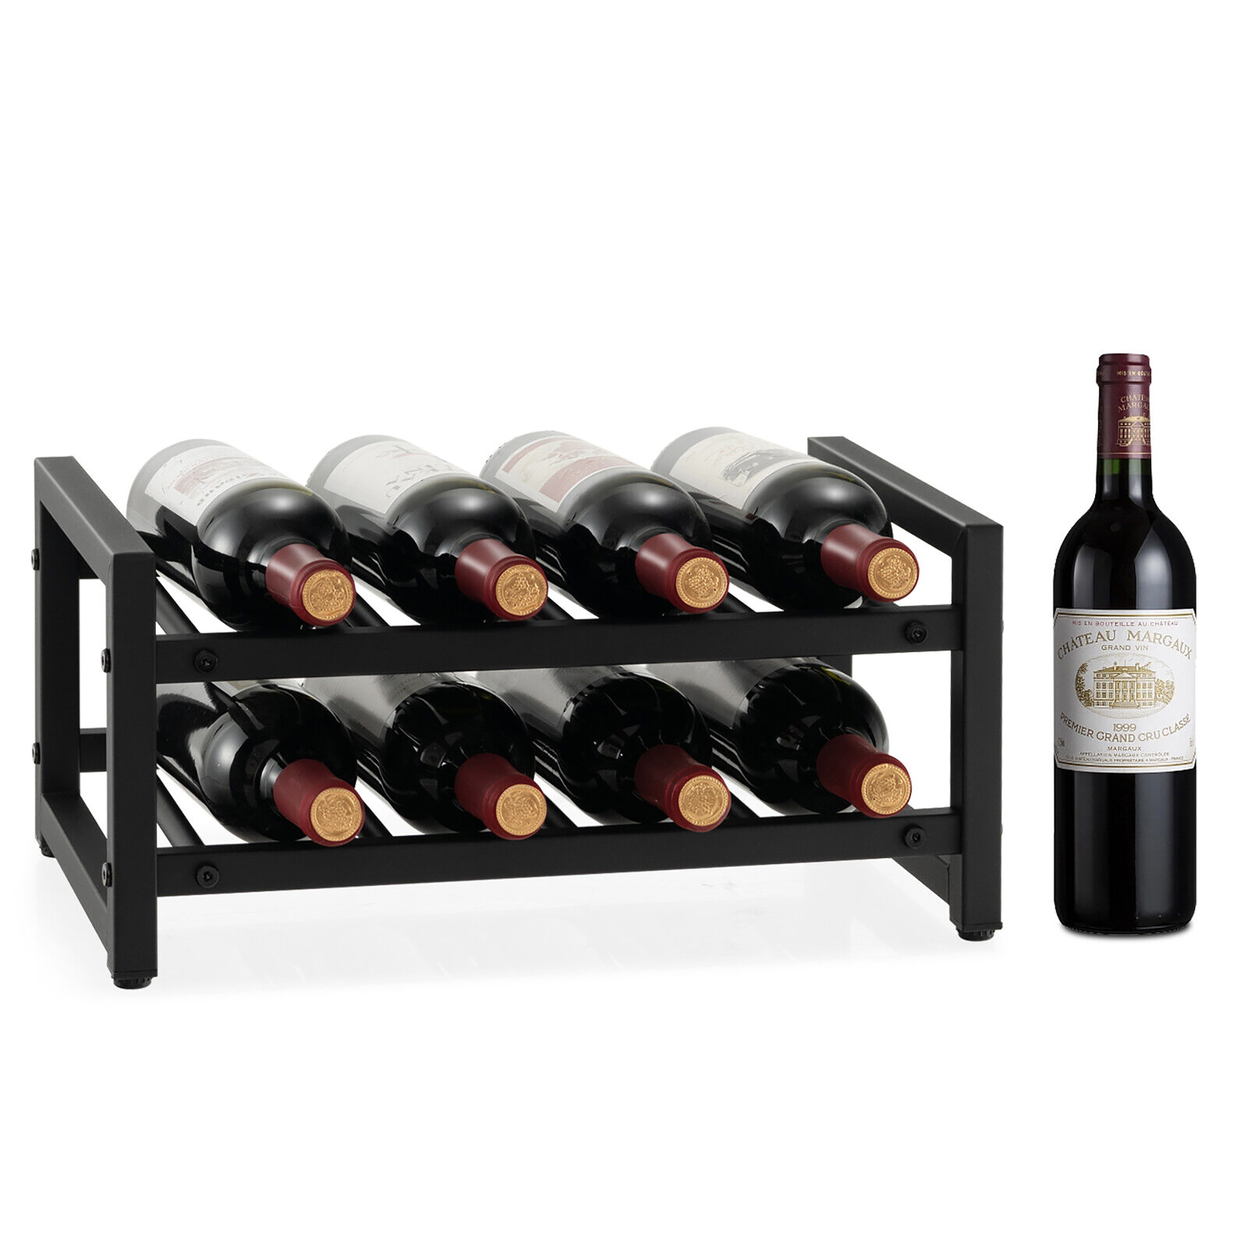 8 Bottle Wine Rack 2 Tier Wine Display Storage Holder Countertop Metal Shelf